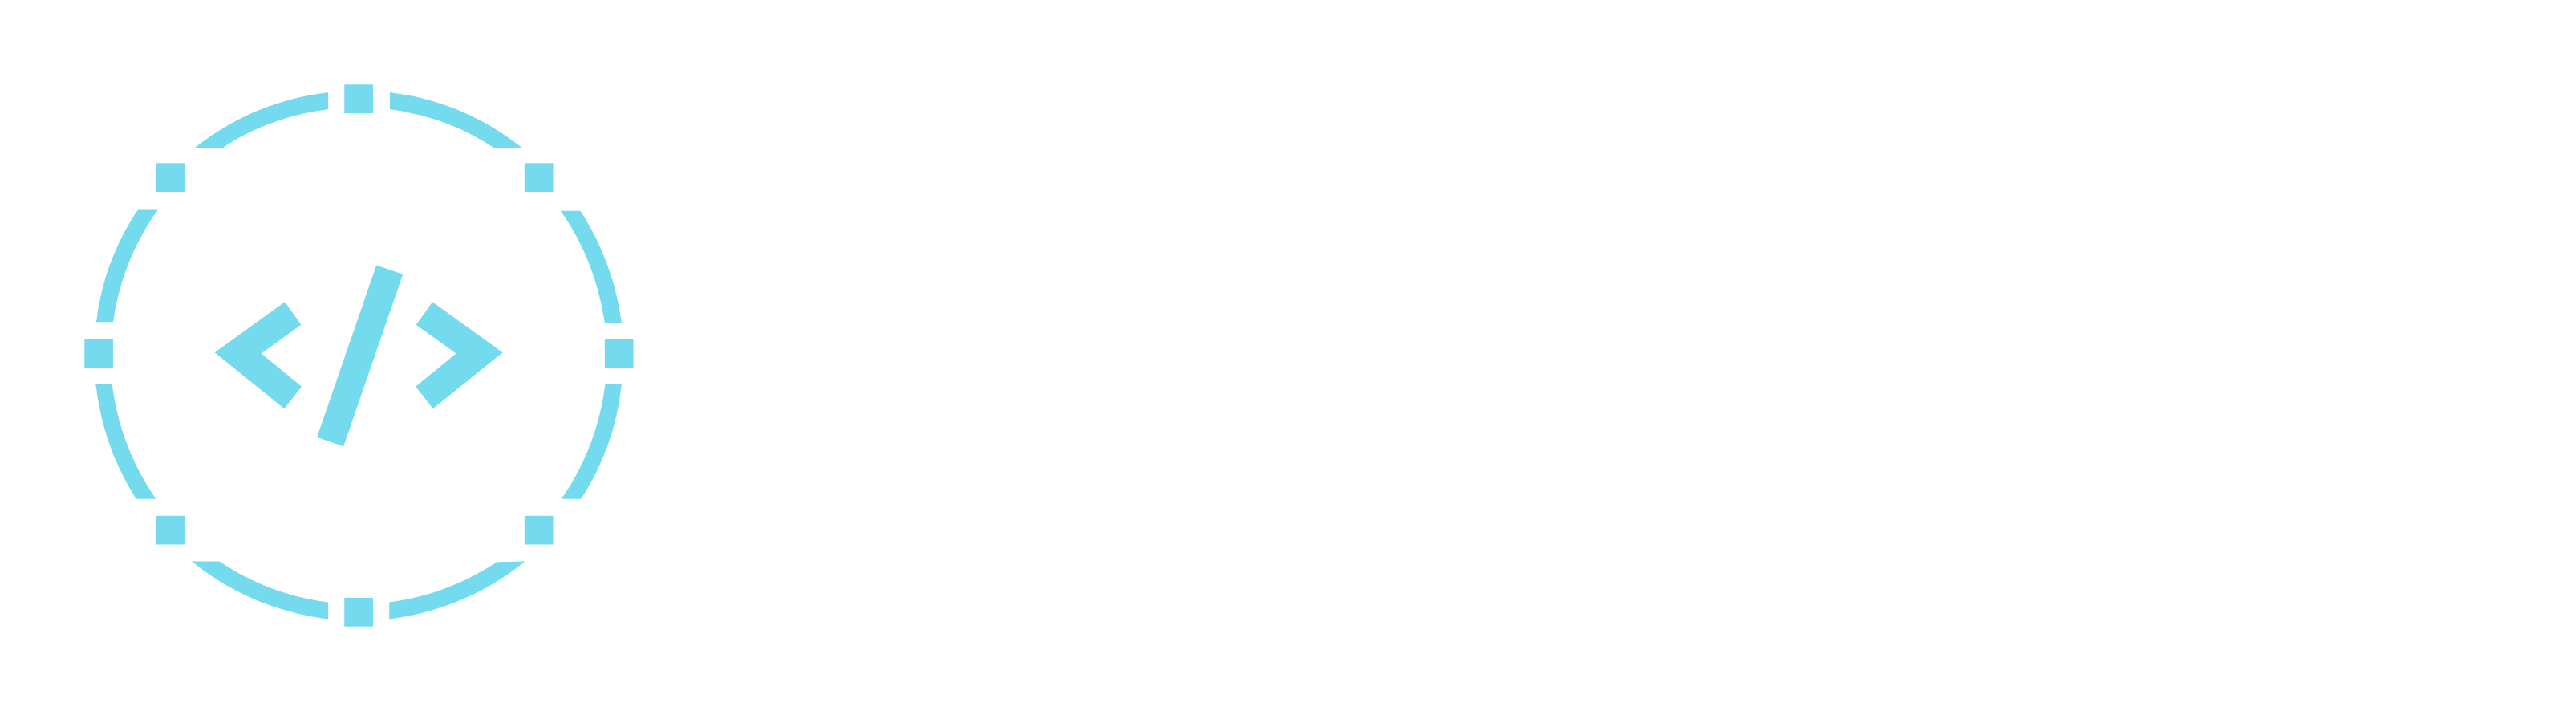 WebWizard MK